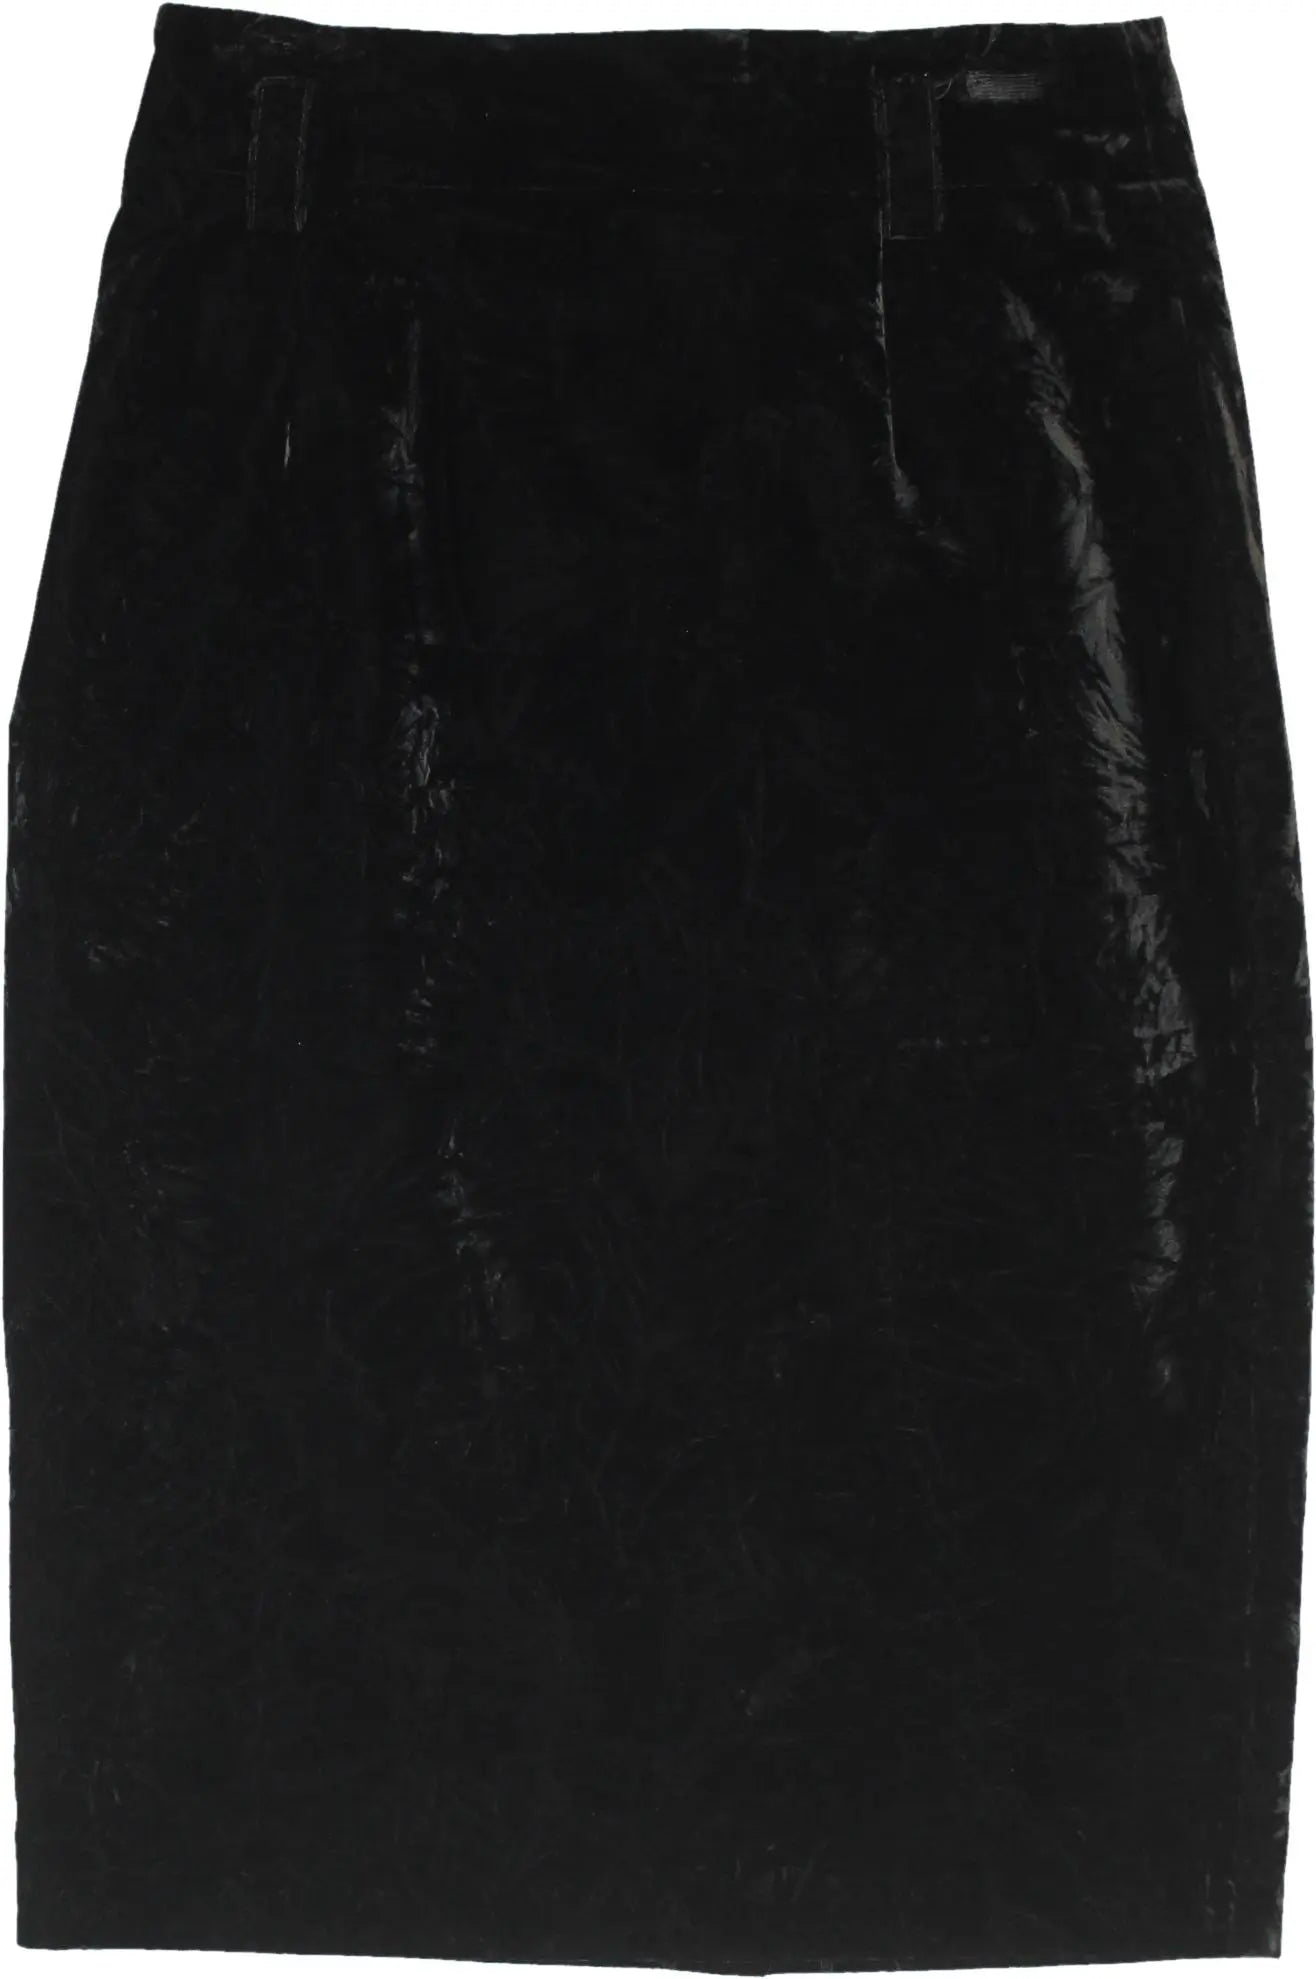 Mondi - Velvet Skirt- ThriftTale.com - Vintage and second handclothing